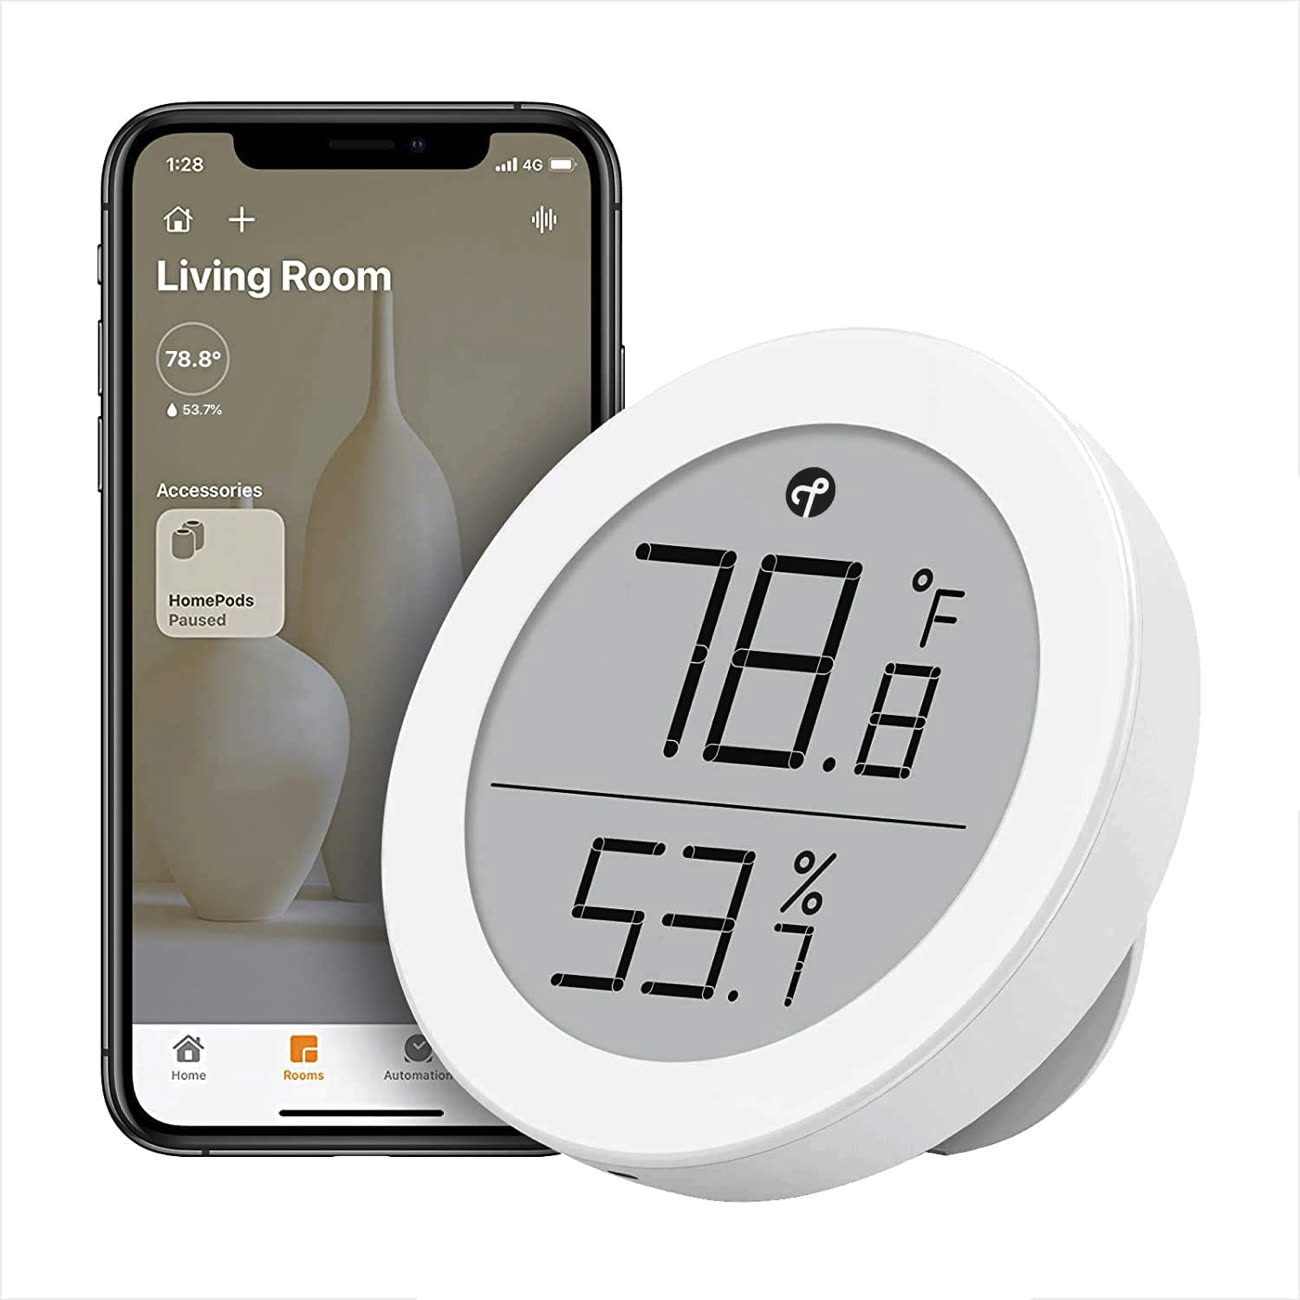 Qingping propose une version avec Thread de son thermomètre connecté HomeKit